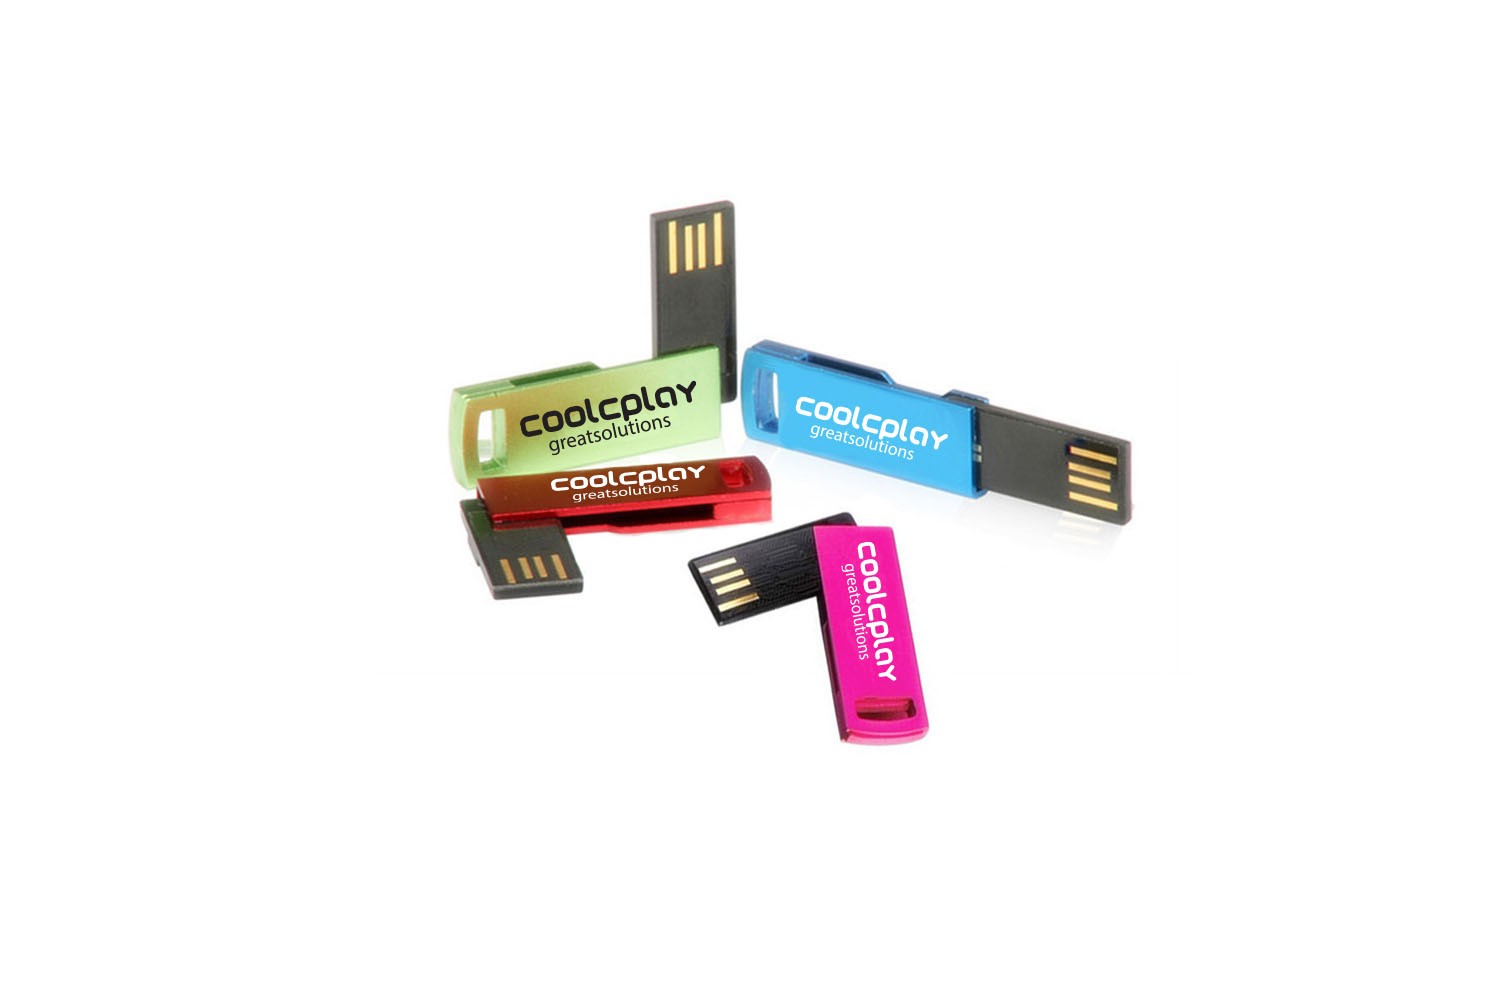 8 GB Thin Metal USB Flashdrive